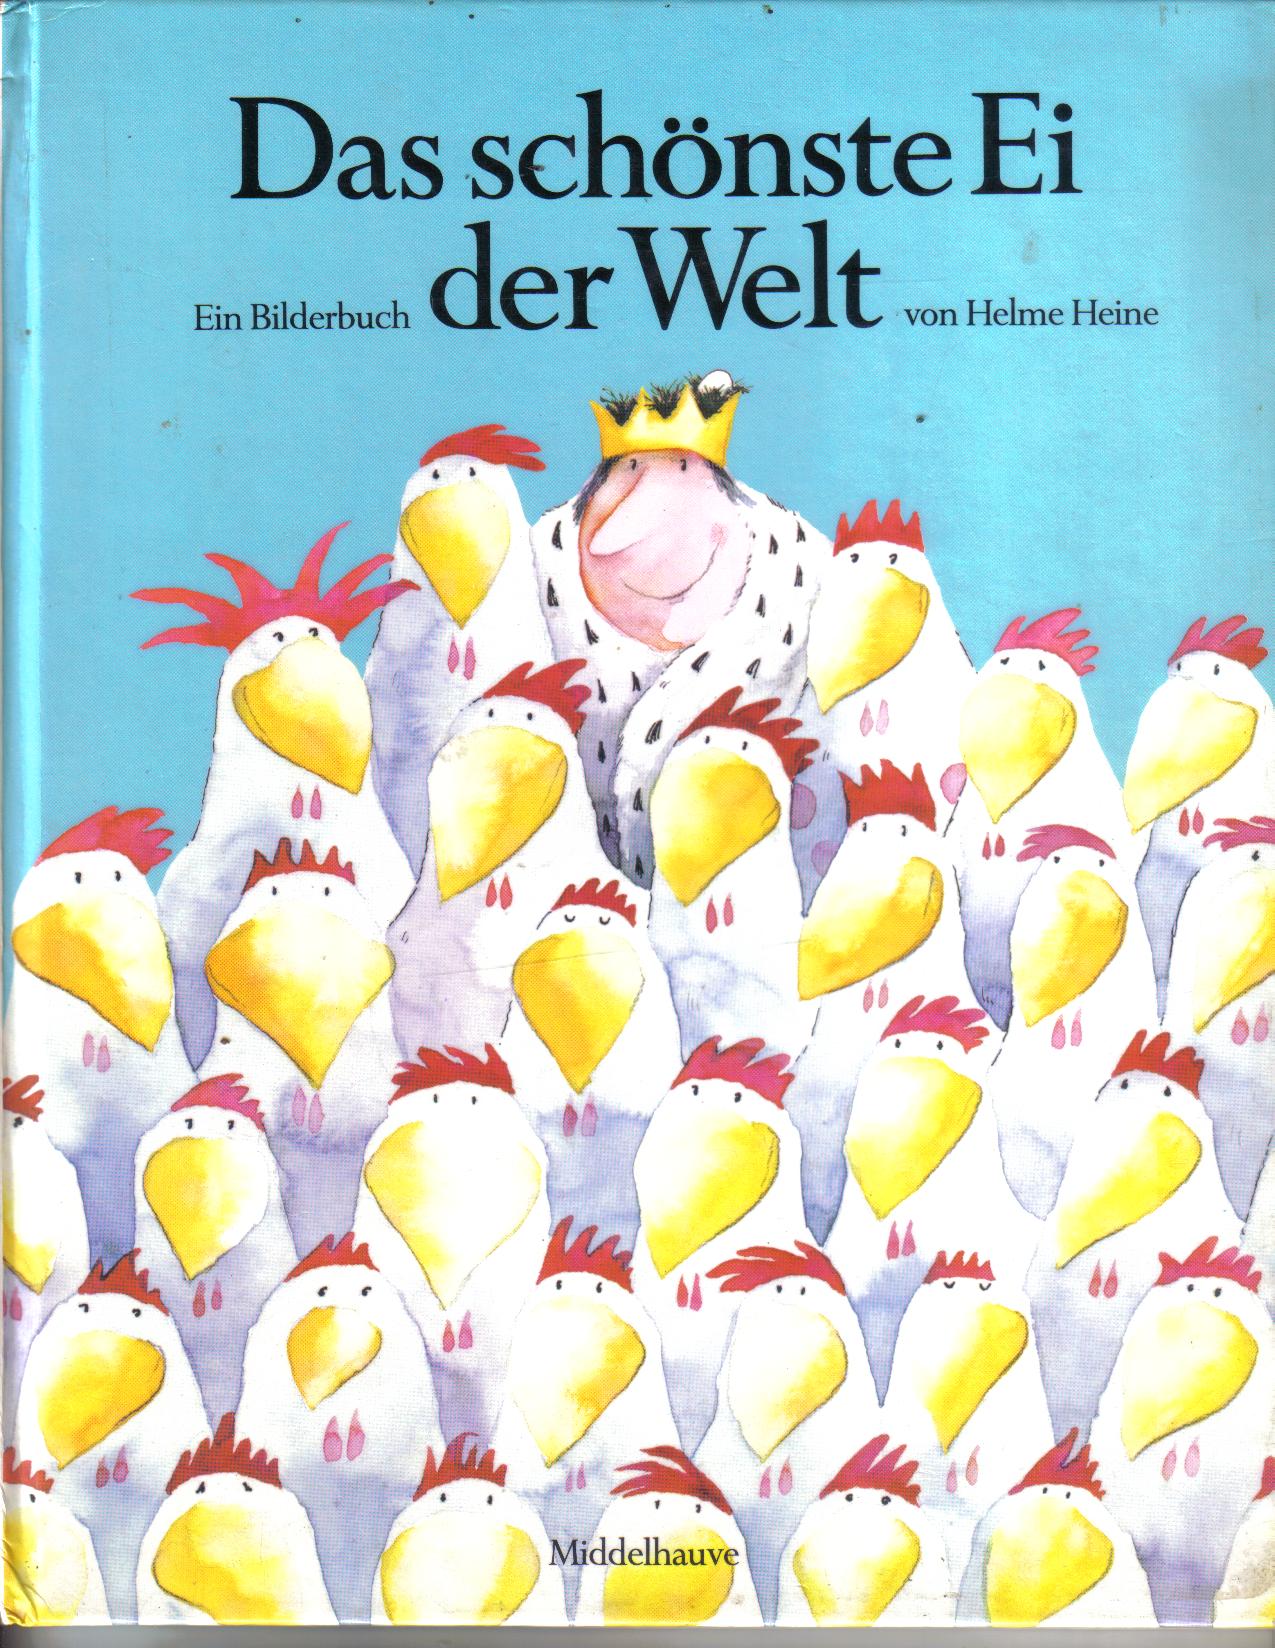 Das schoenste Ei der Welt Ein Bilderbuch von Helme Heine